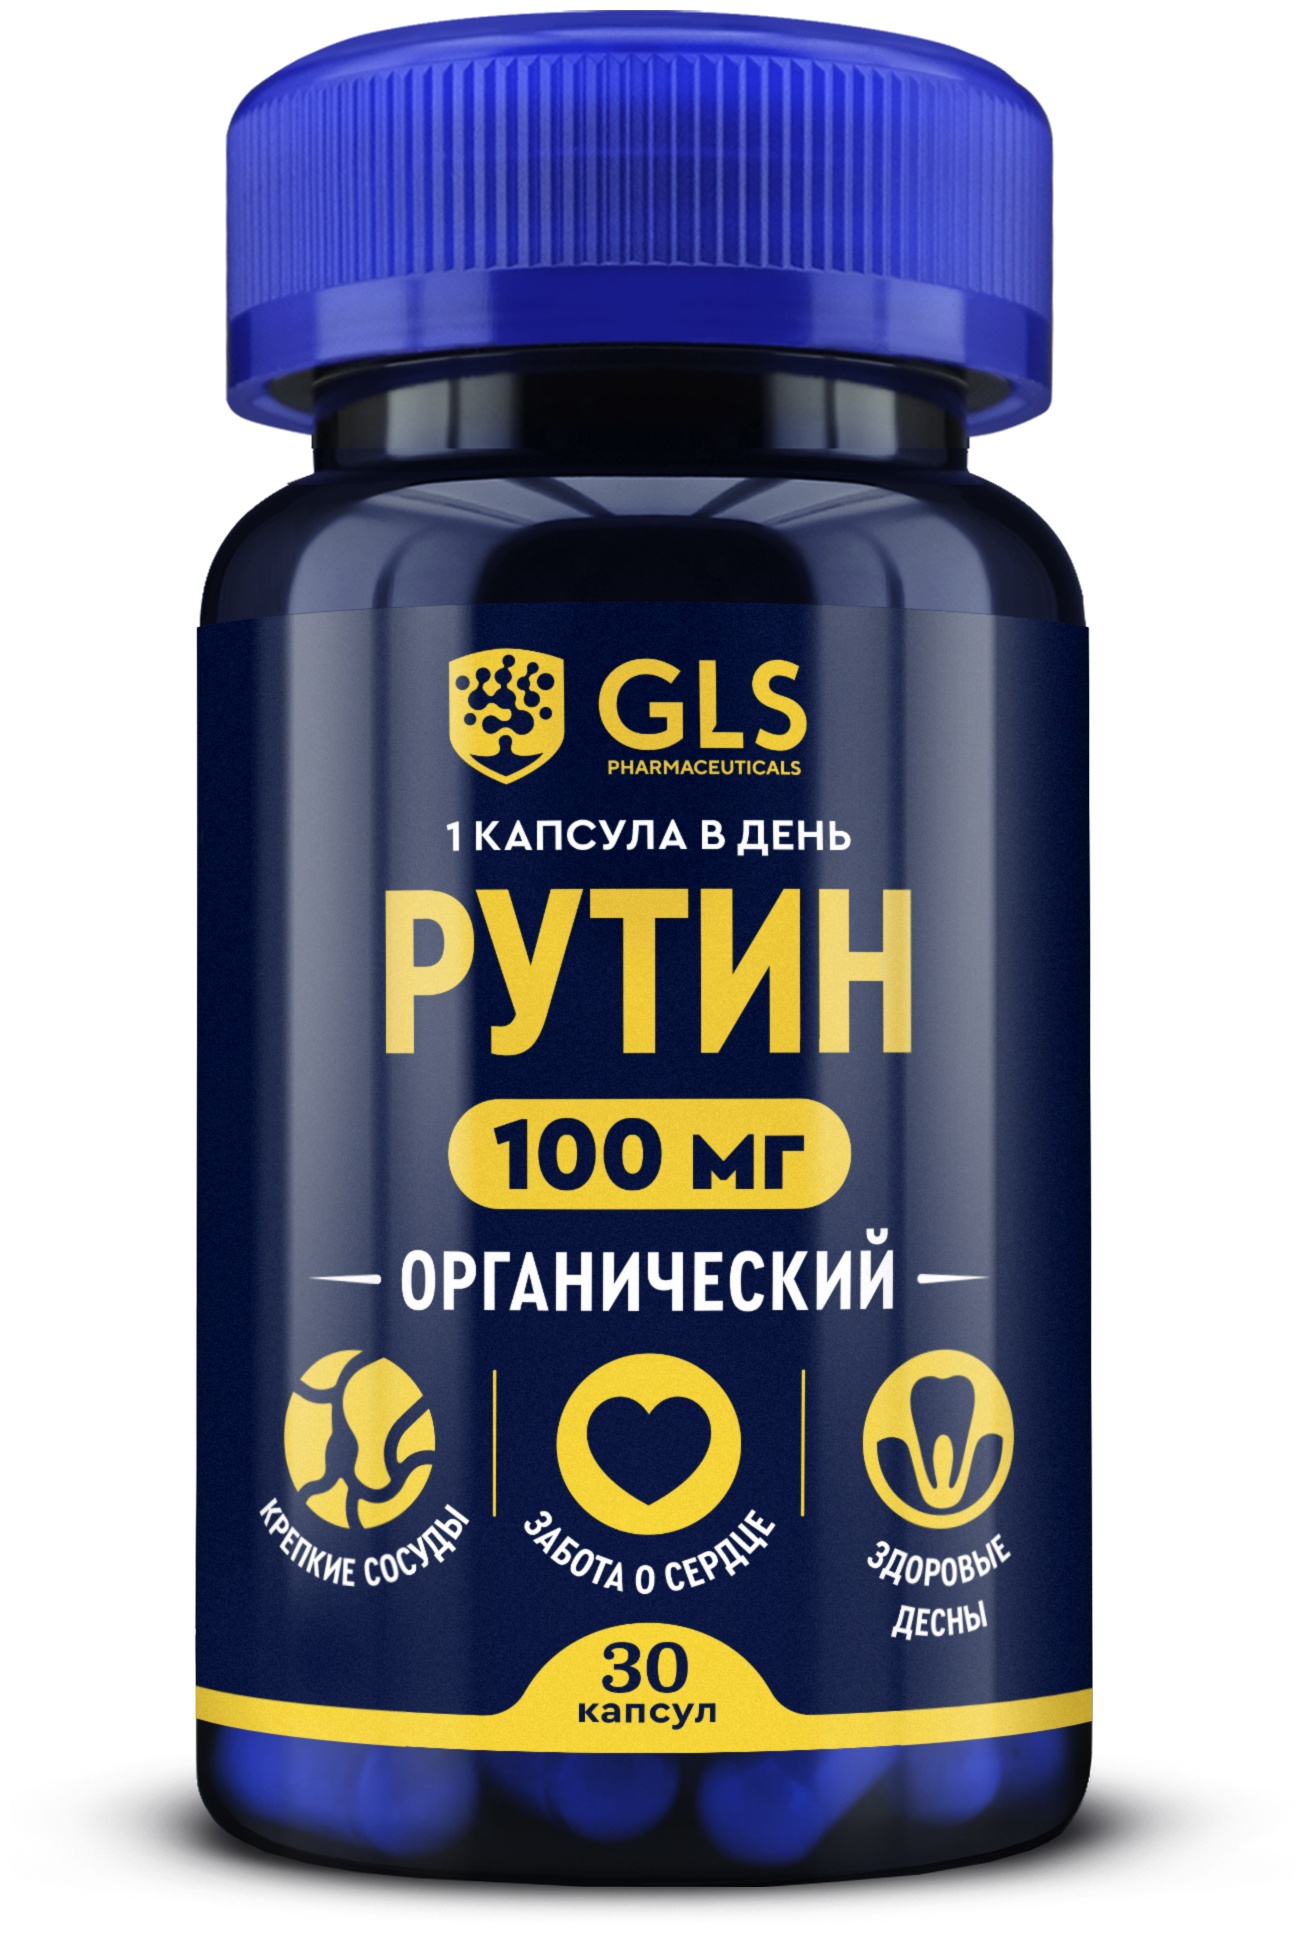 Рутин 100 мг GLS витамины для сосудов и сердца 30 капсул